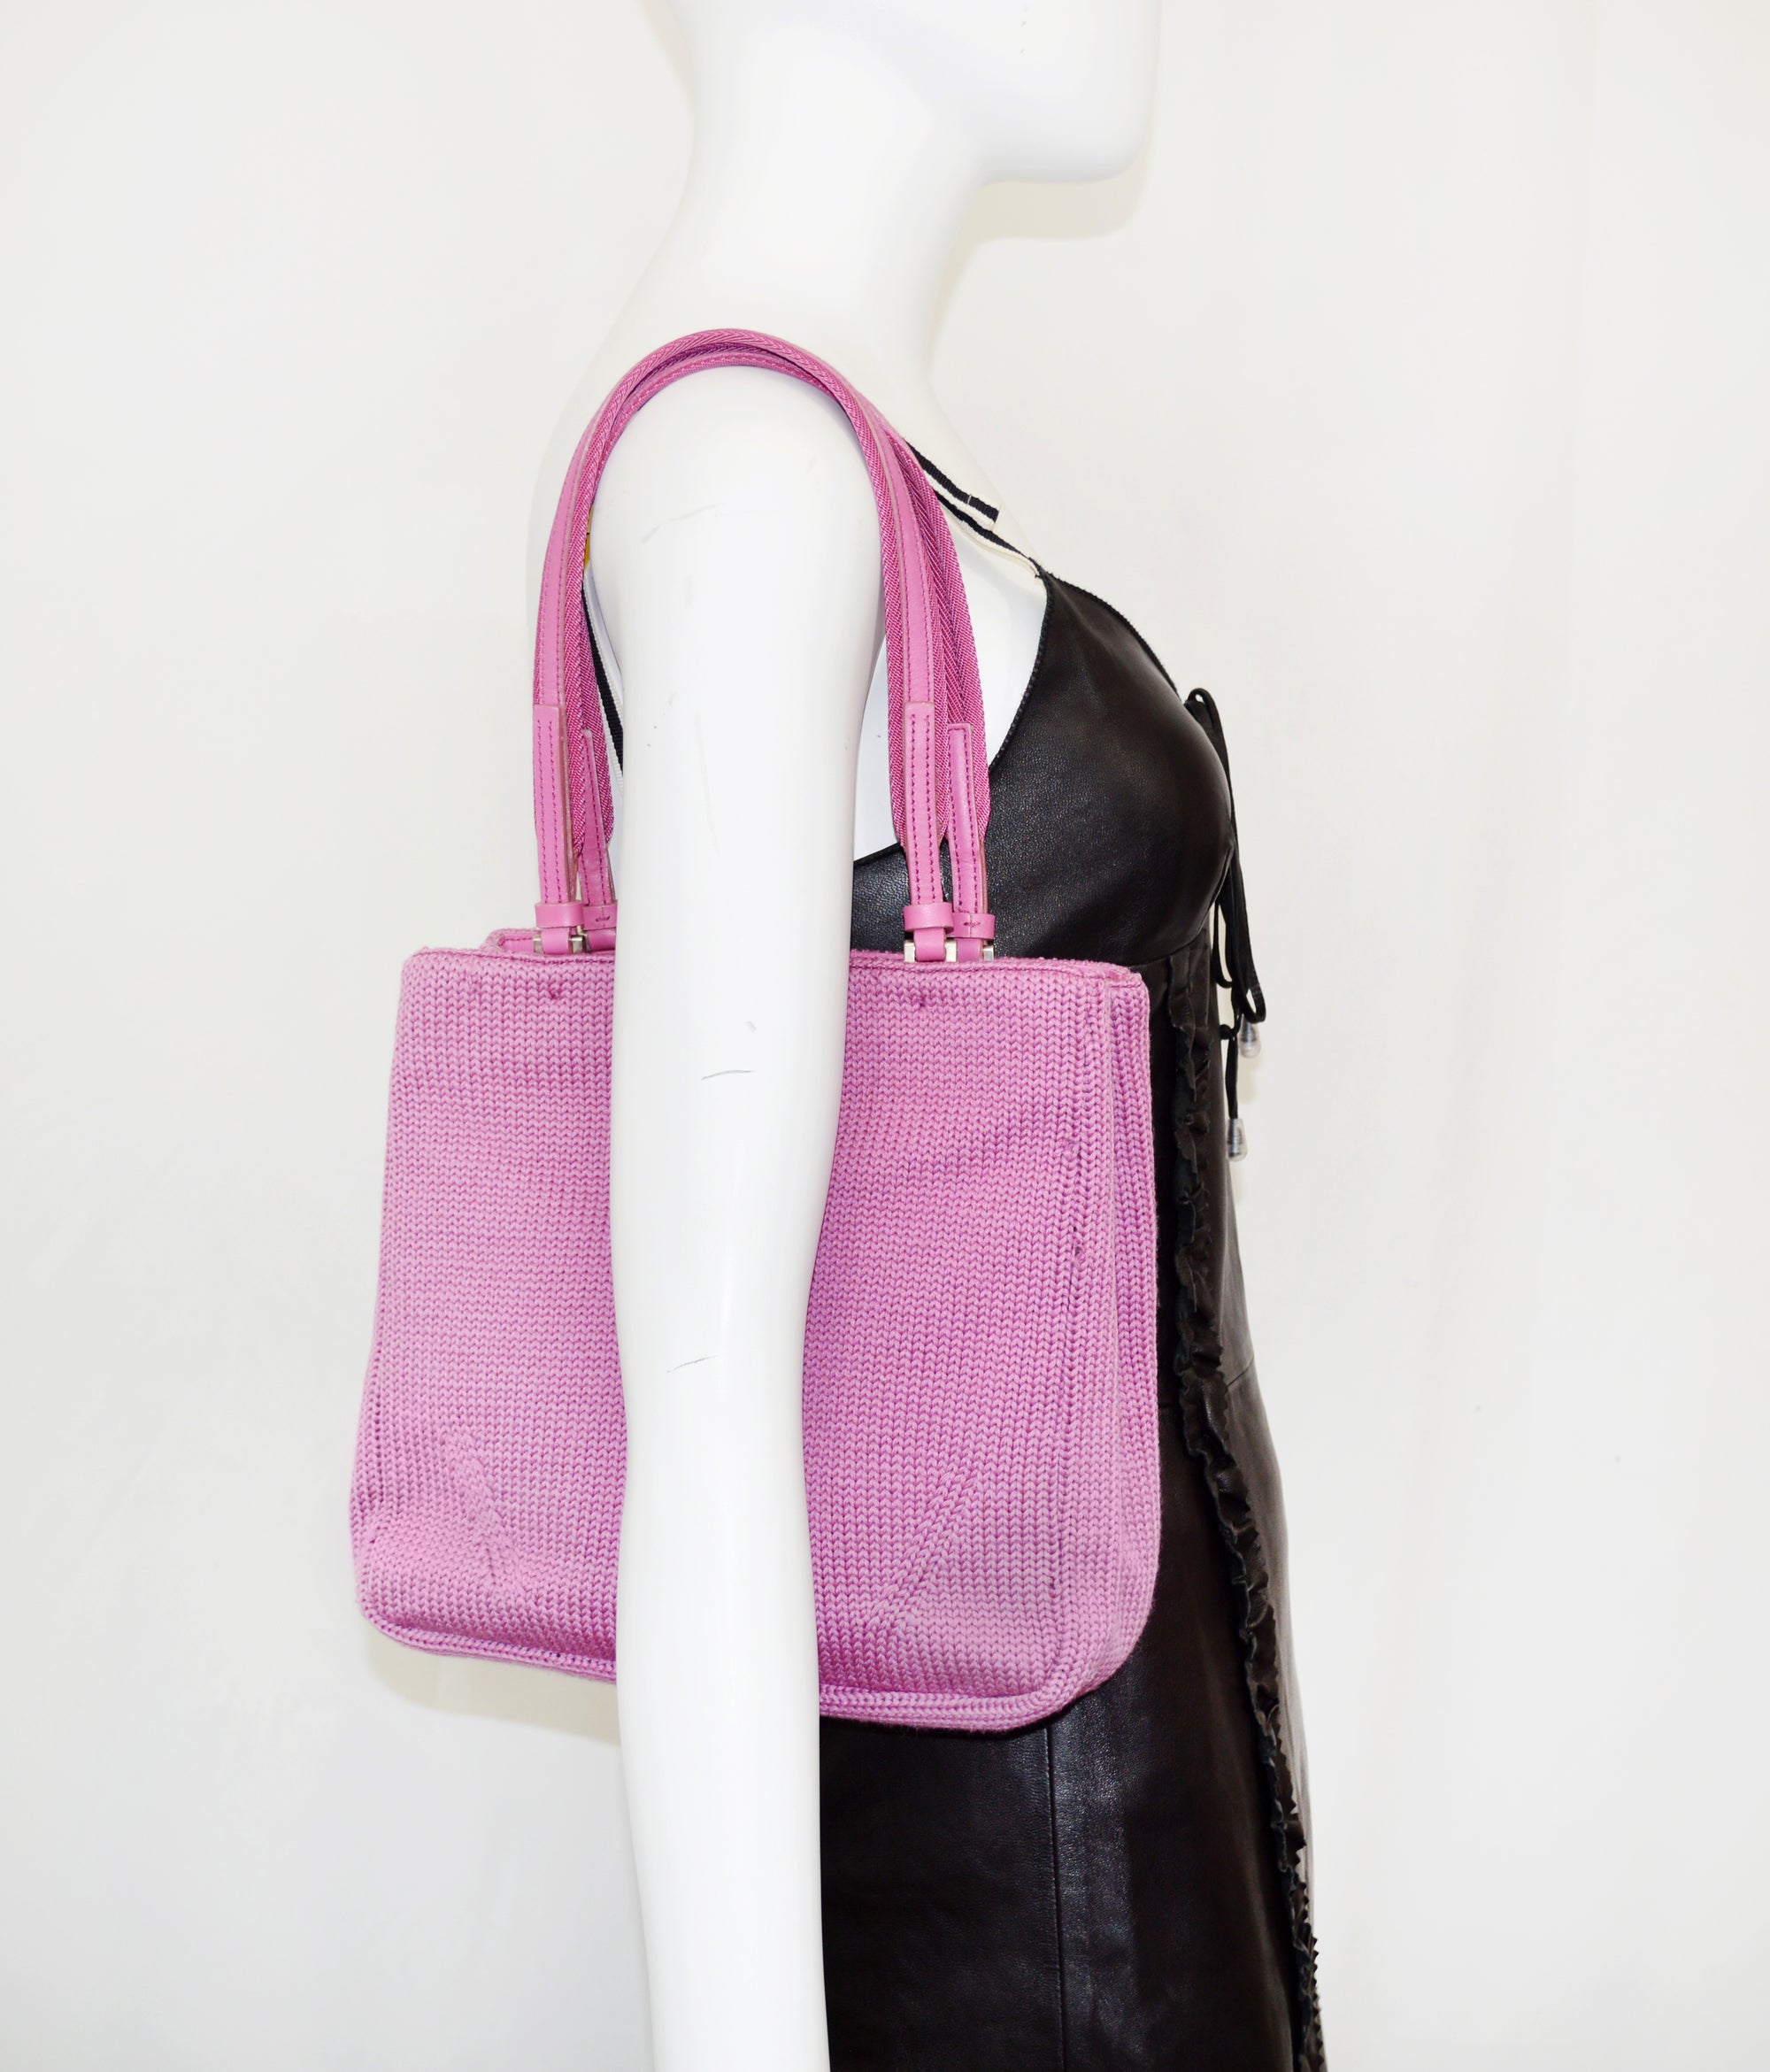 Prada wool knit bag, 1999, pink